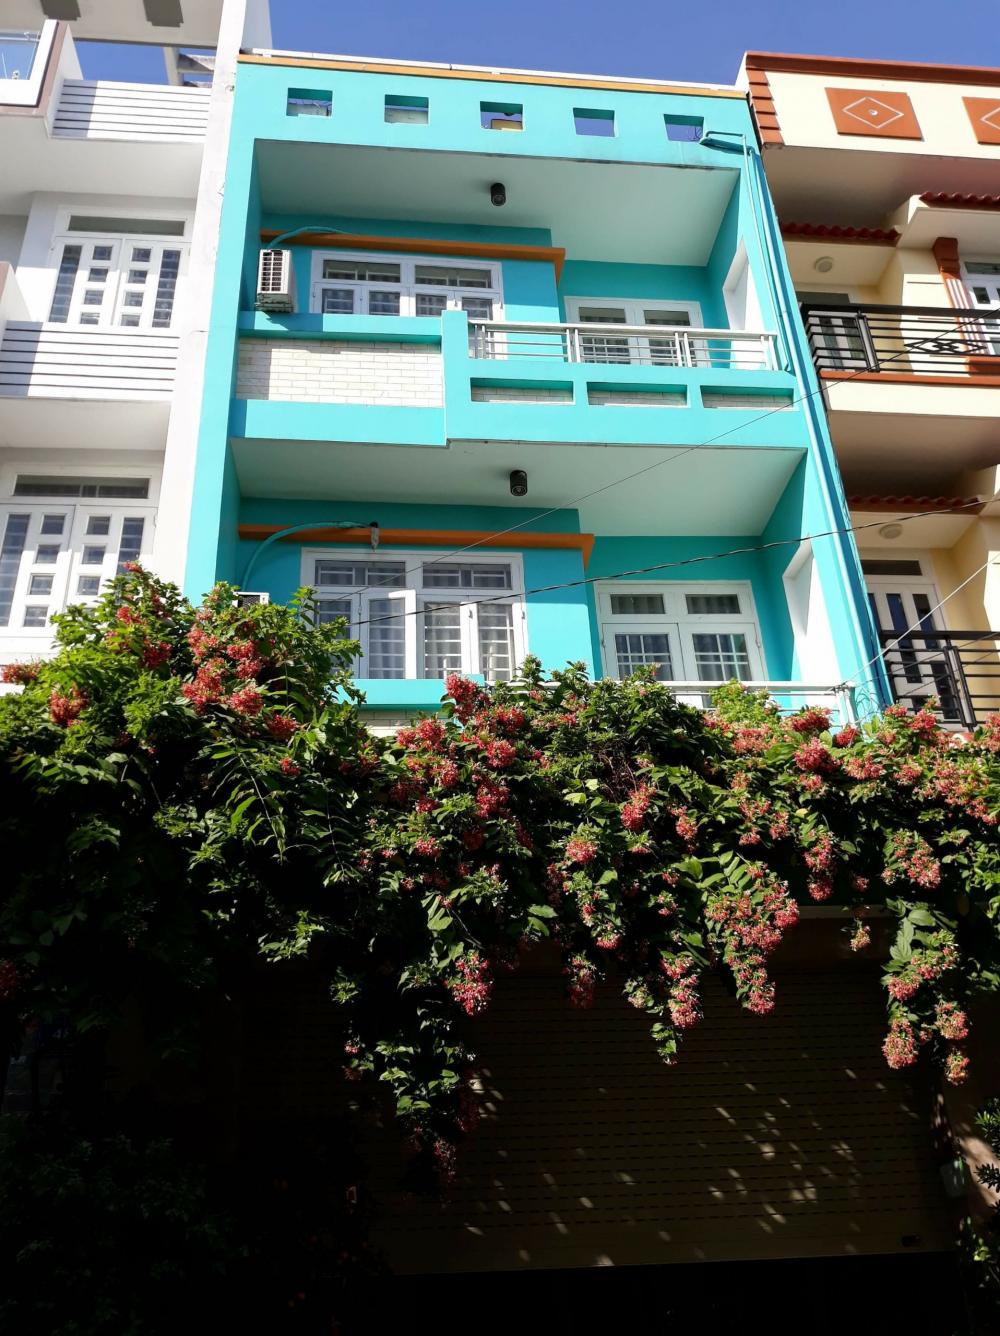 Nhà cần bán gấp MT khu dân cư Tiến Thành, Q.Bình Tân, DT 5m x 14m, 3 tầng, giá 3.85 tỷ(TL)